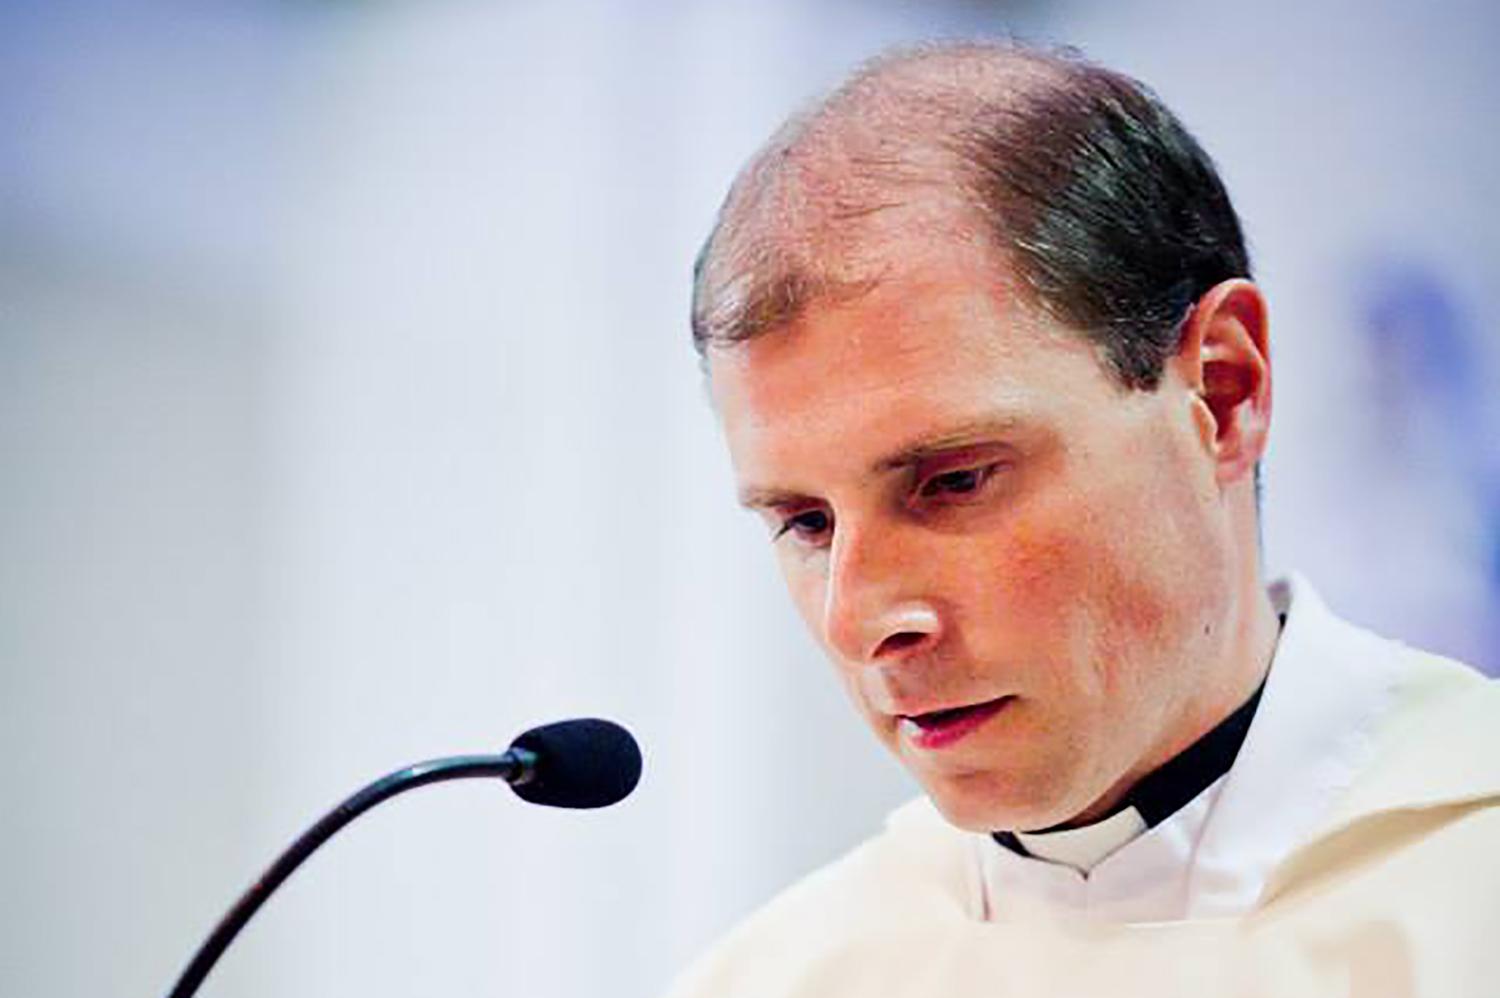 Kňaz Marek Sitár: Pozvanie slúžiť v Bruseli ma prekvapilo, ale hneď som povedal áno